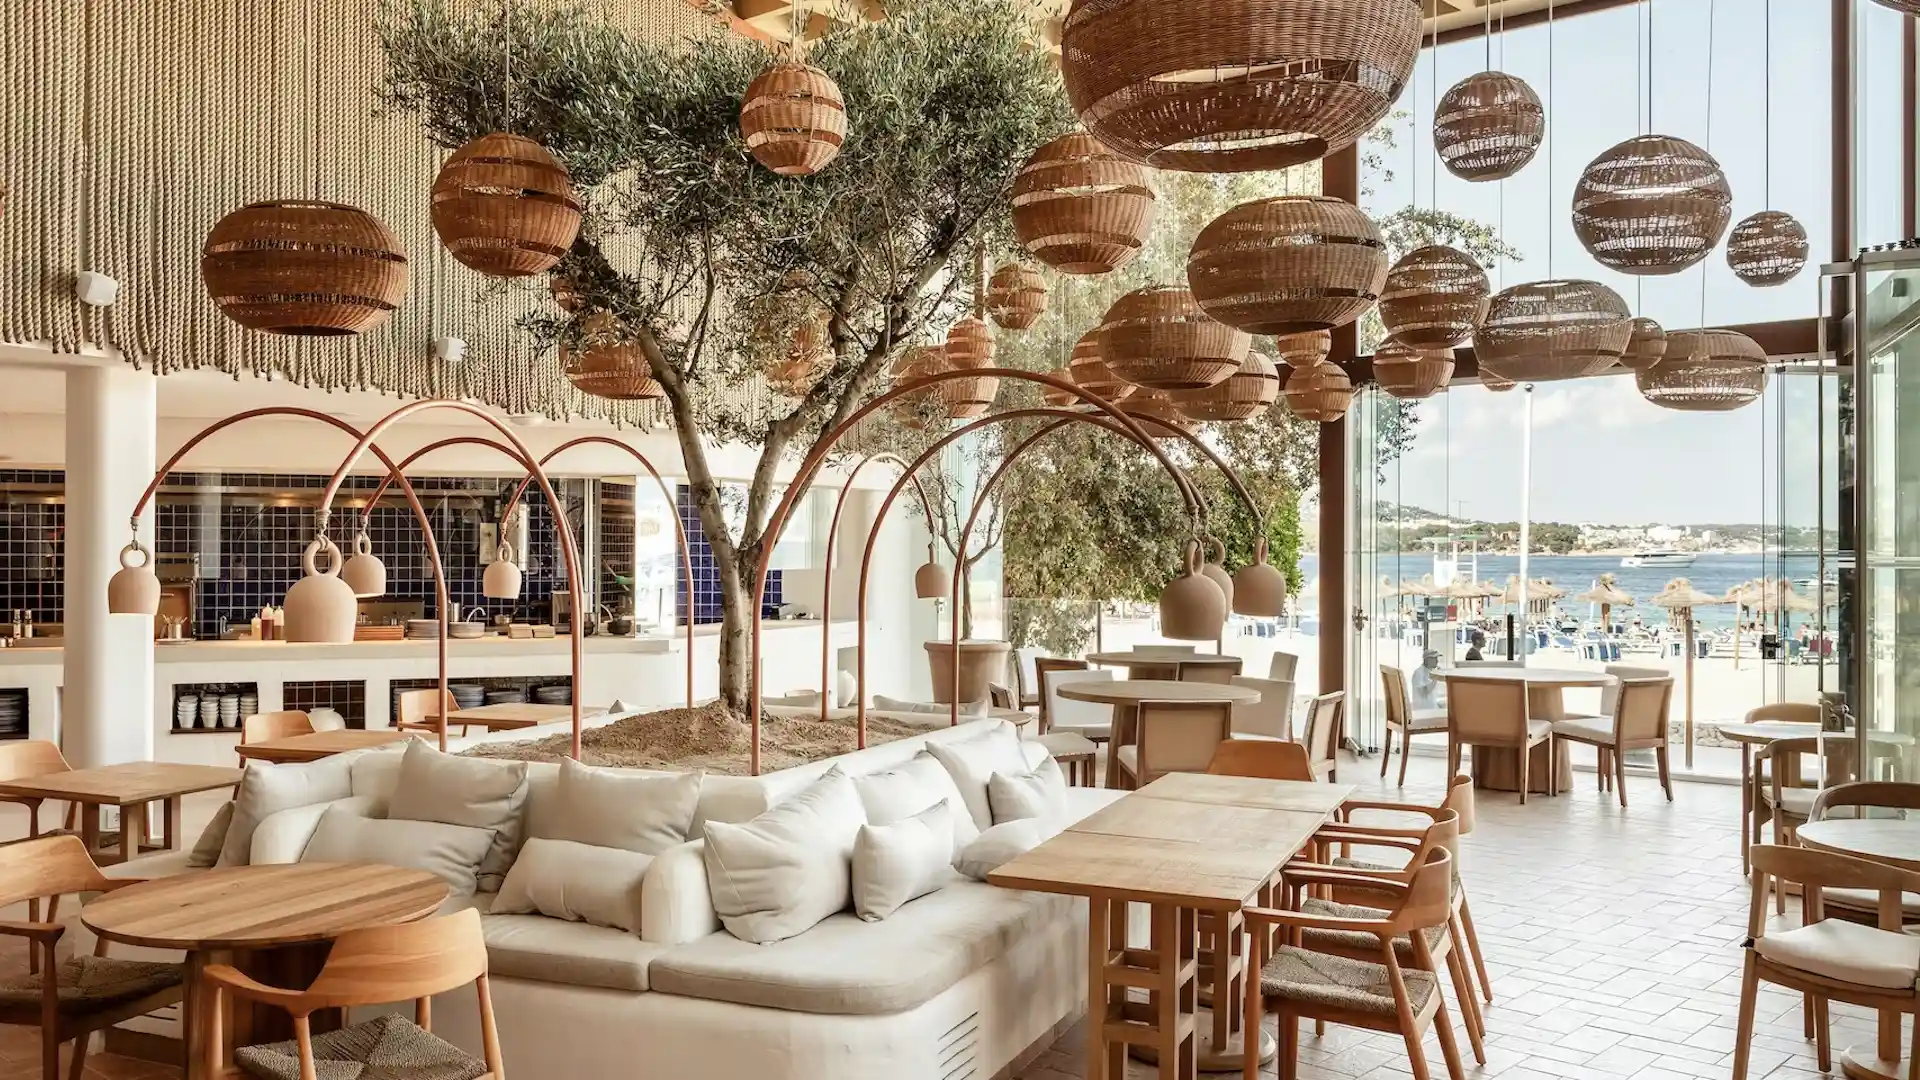 Así es Zel Mallorca, el nuevo hotel de Rafael Nadal en España: imágenes